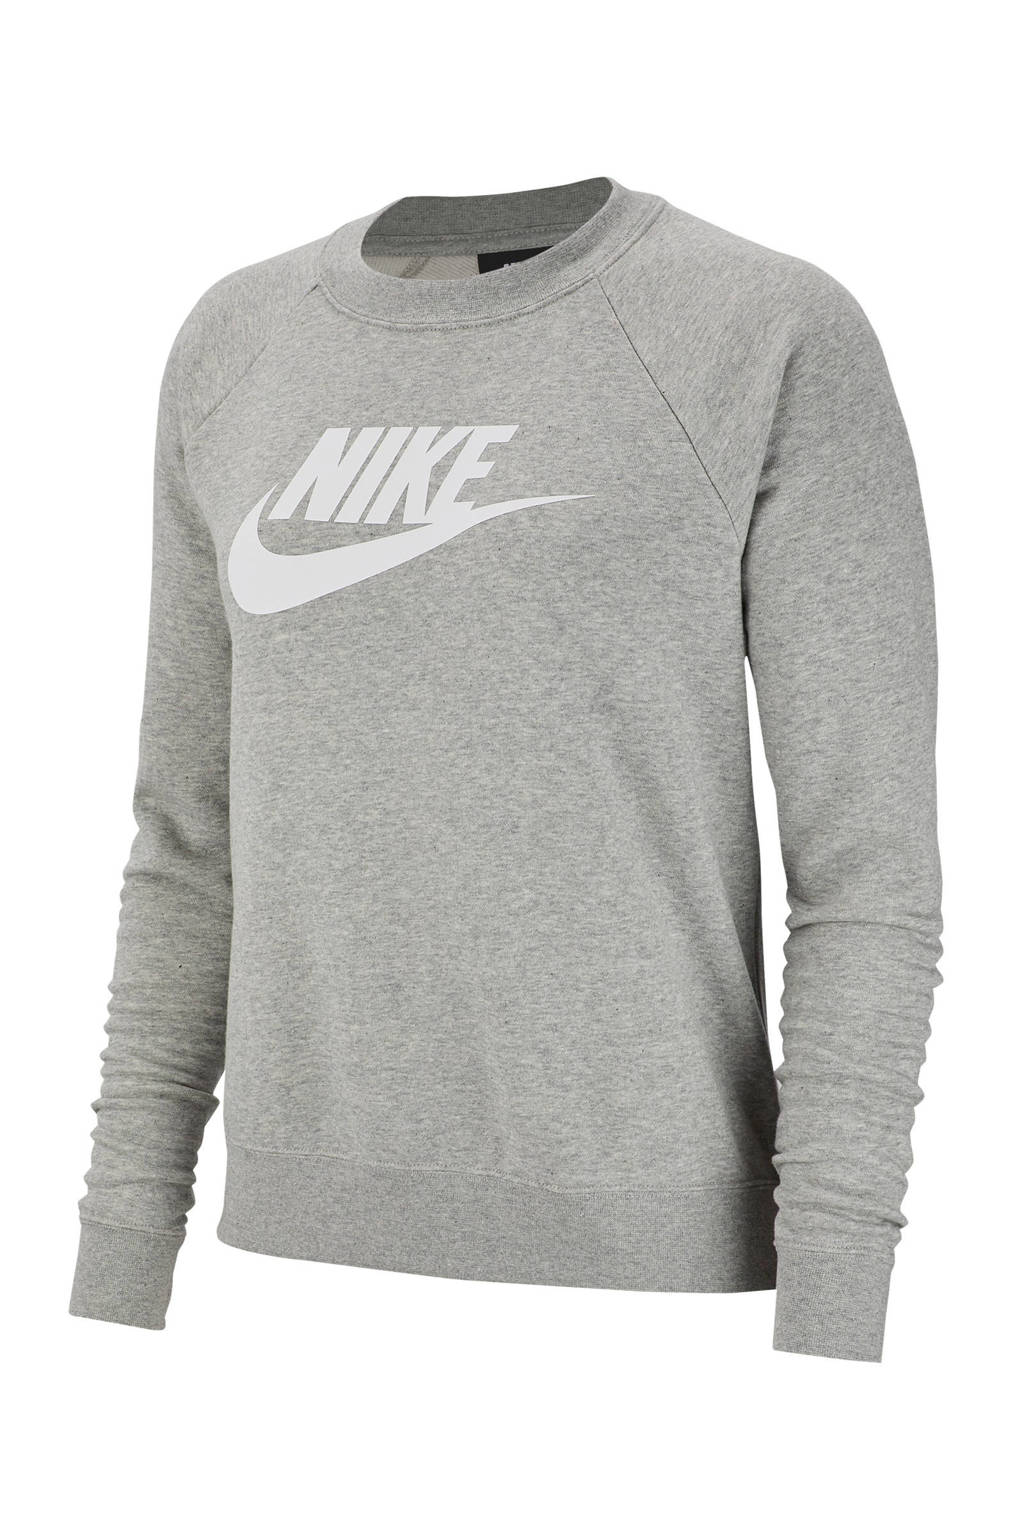 Grijze dames Nike sweater van katoen met printopdruk, lange mouwen en ronde hals